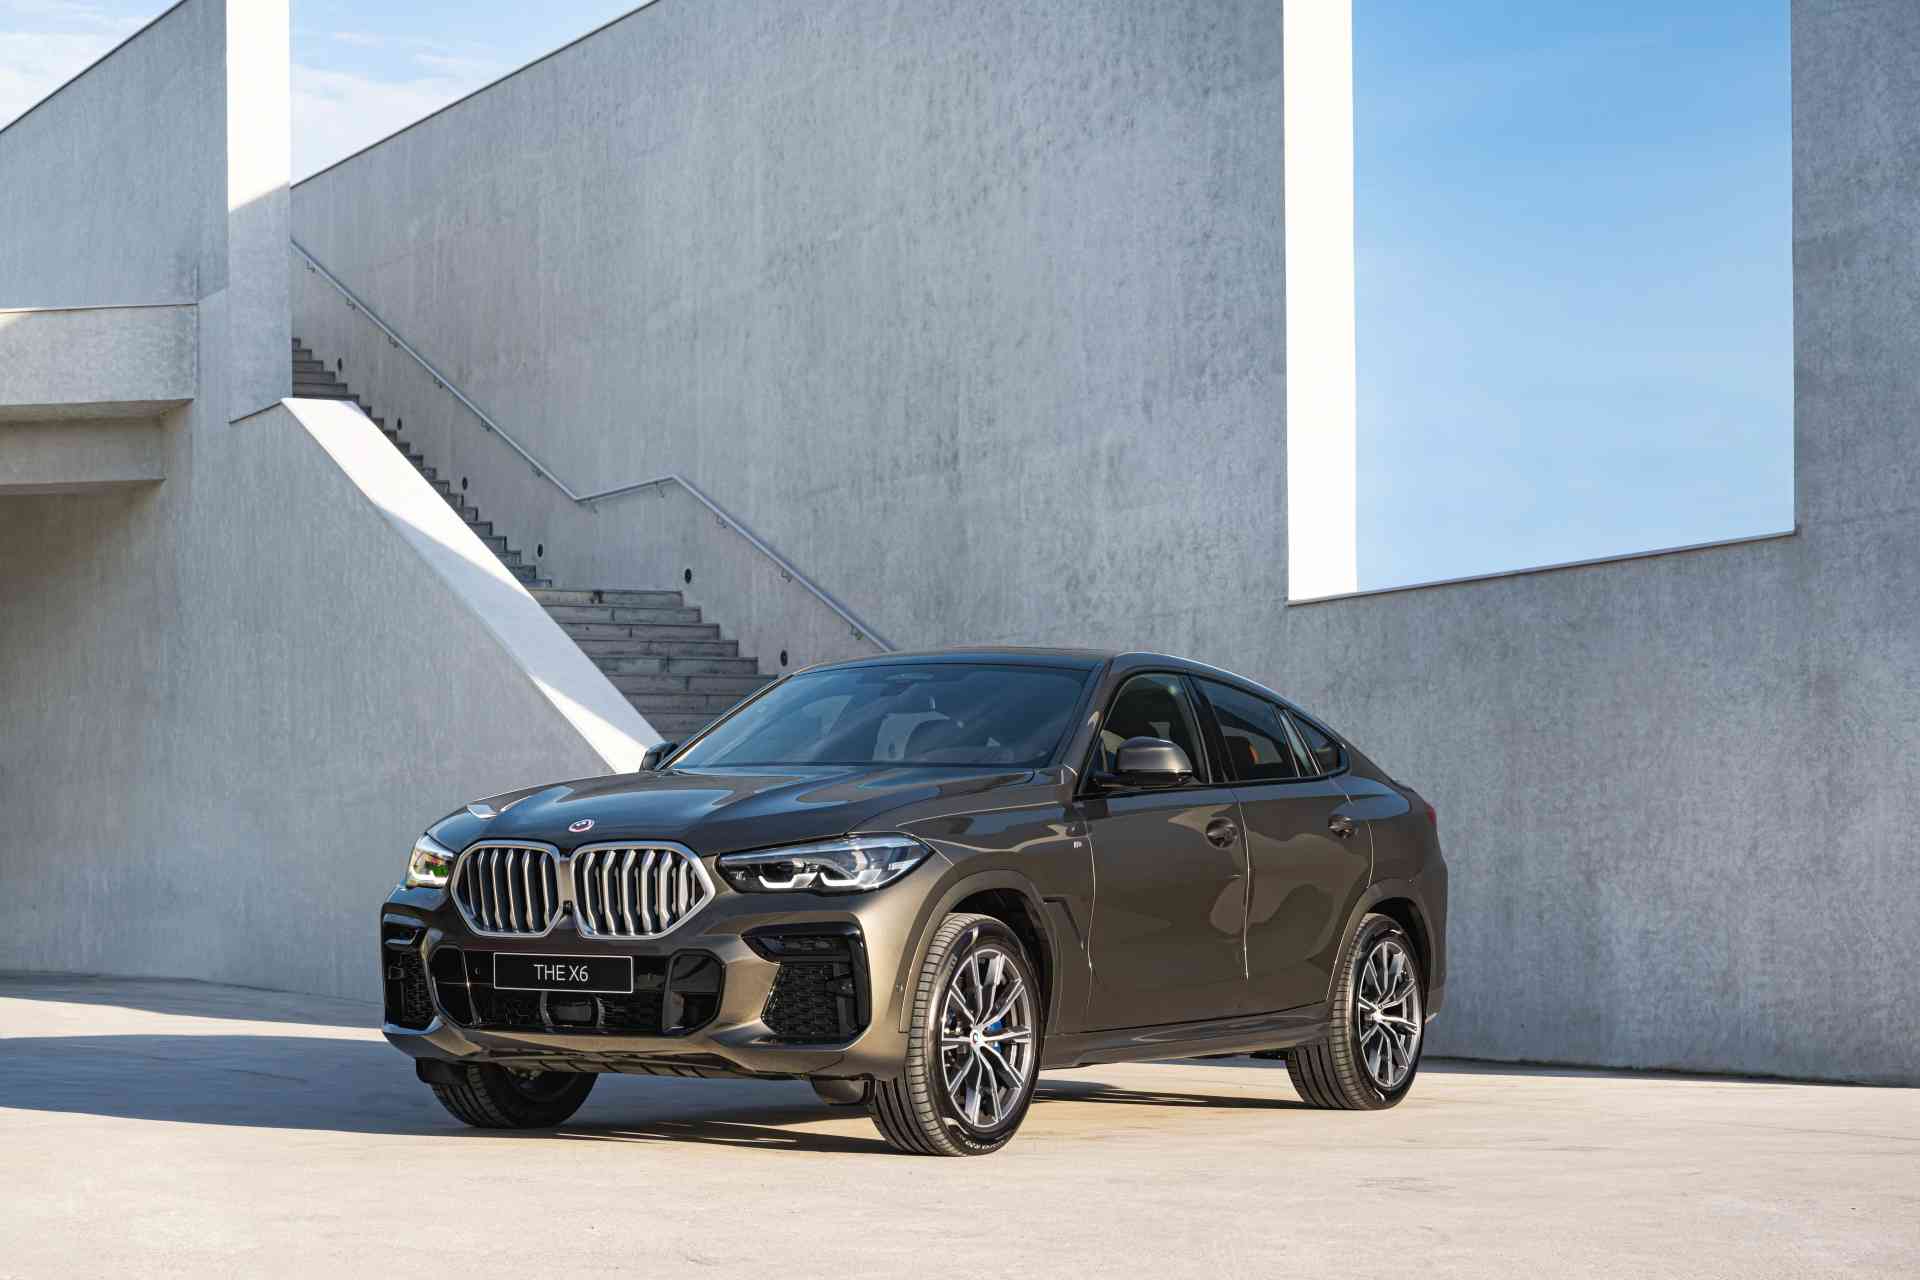 豪華運動跑旅之王全新BMW X6鉑金版 傲然上市